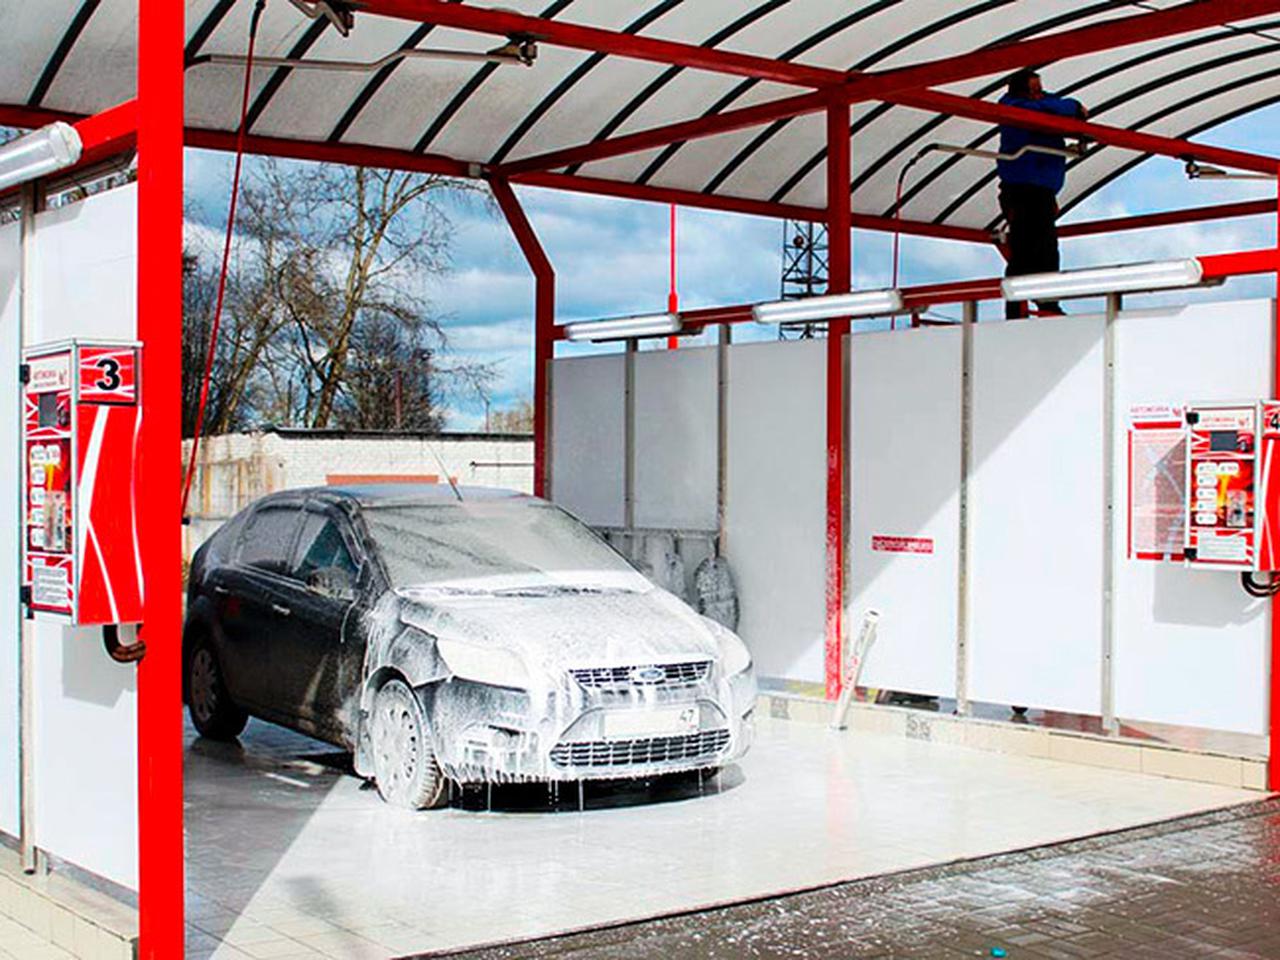 Как правильно мыть автомобиль